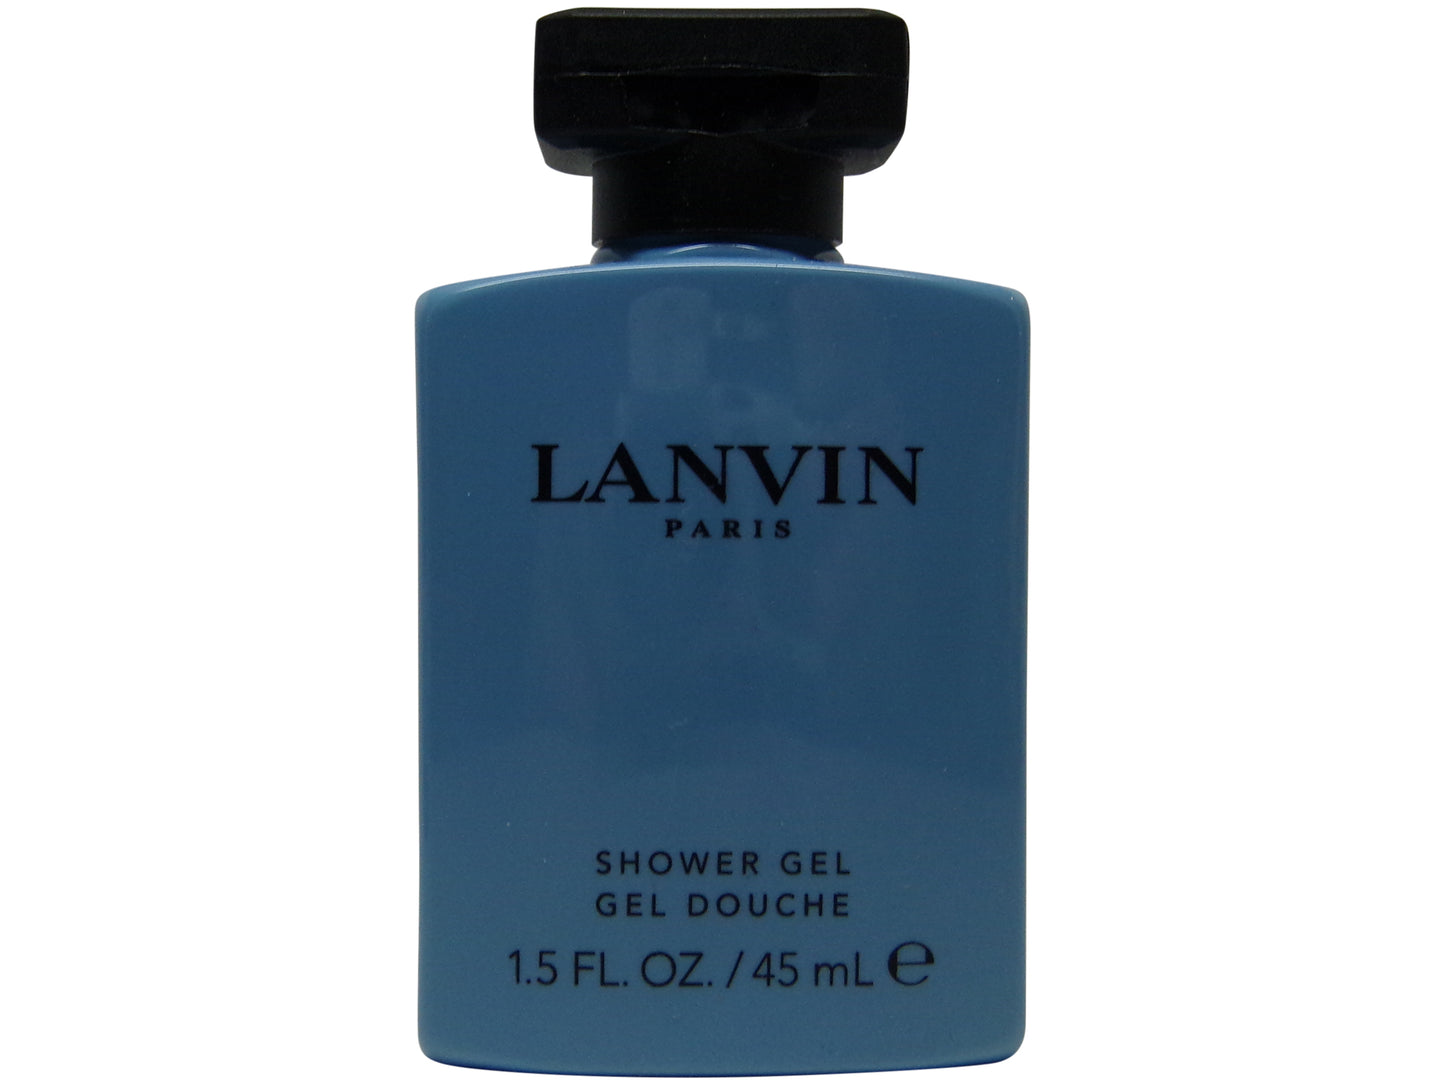 Les Notes de Lanvin Orange Ambre Travel Set Shampoo Conditioner Lotion Gel Soap